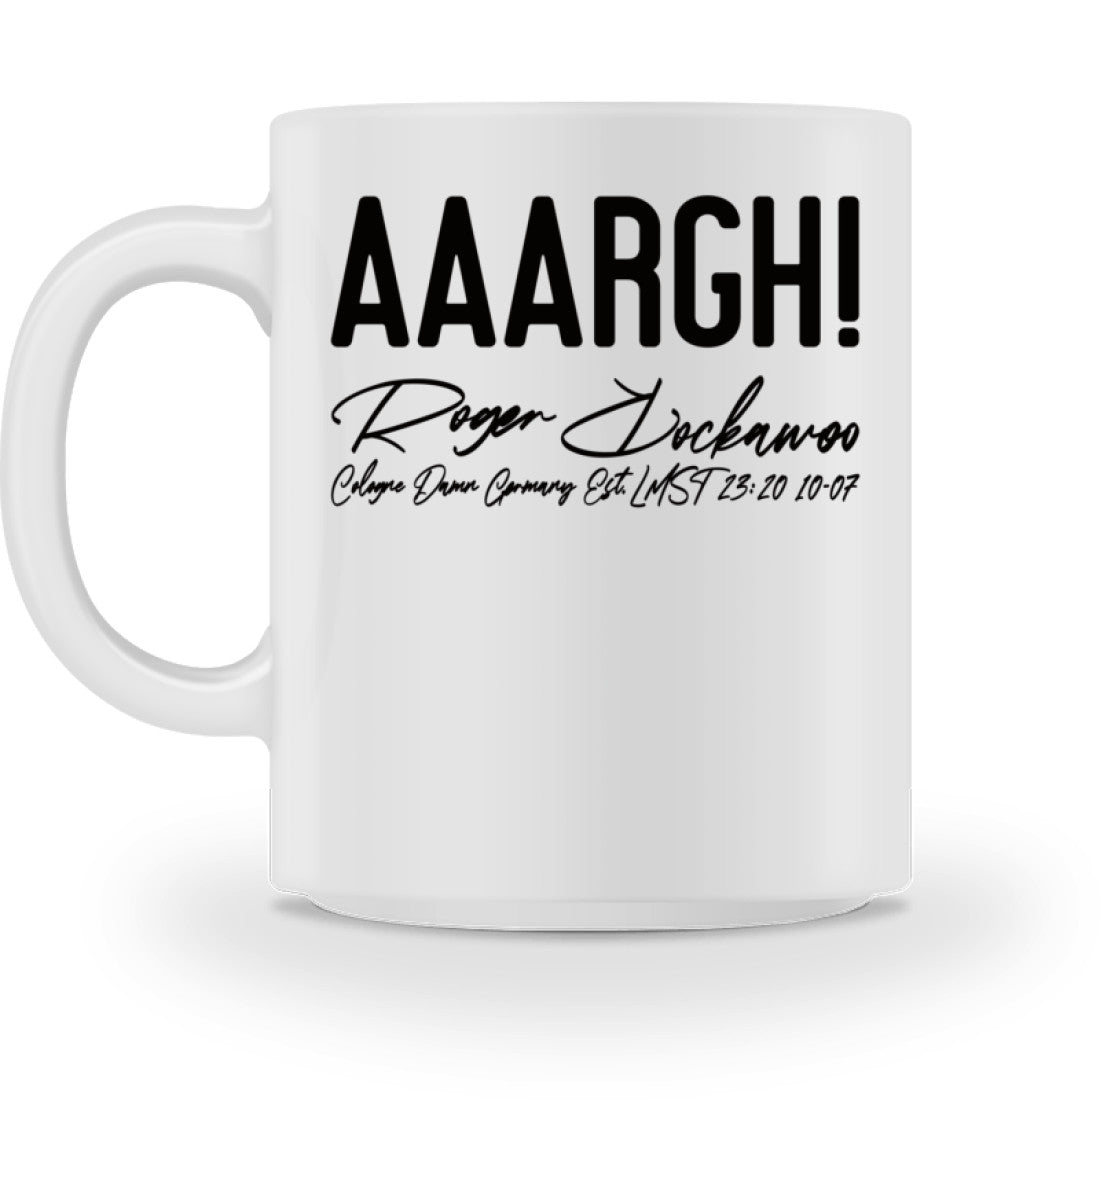 Weiße Tasse bedruckt mit dem Design der AAARGH! Kollektion von Roger Rockawoo